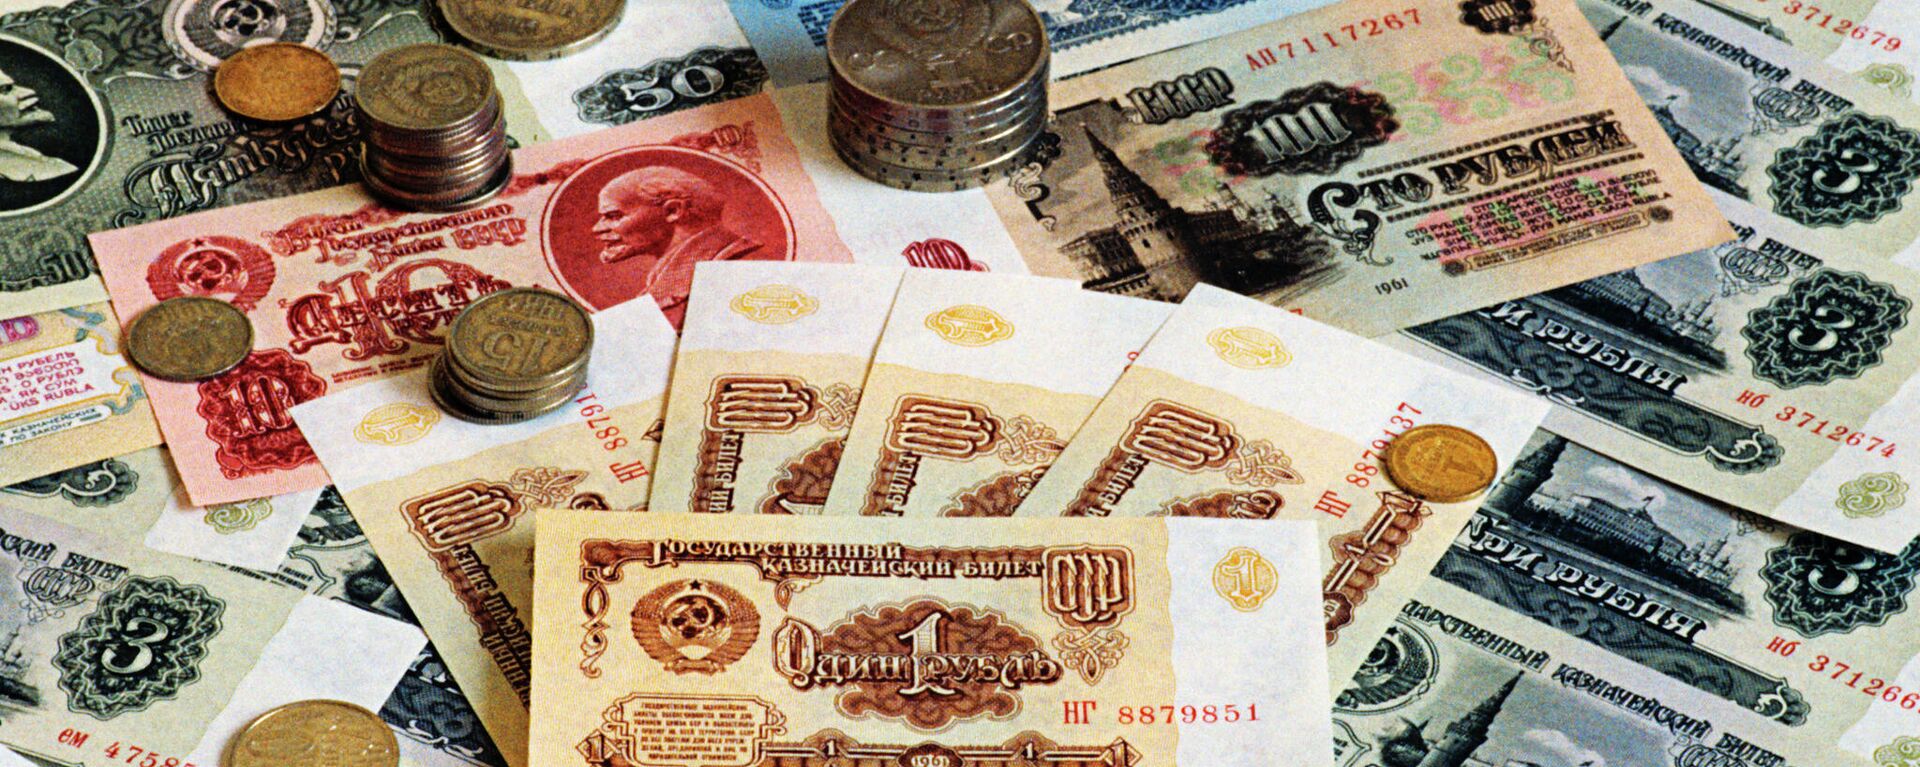 Советские деньги, банкноты и монеты, которые были в обращении в СССР с 1961 по 1992 год - Sputnik Латвия, 1920, 27.12.2021